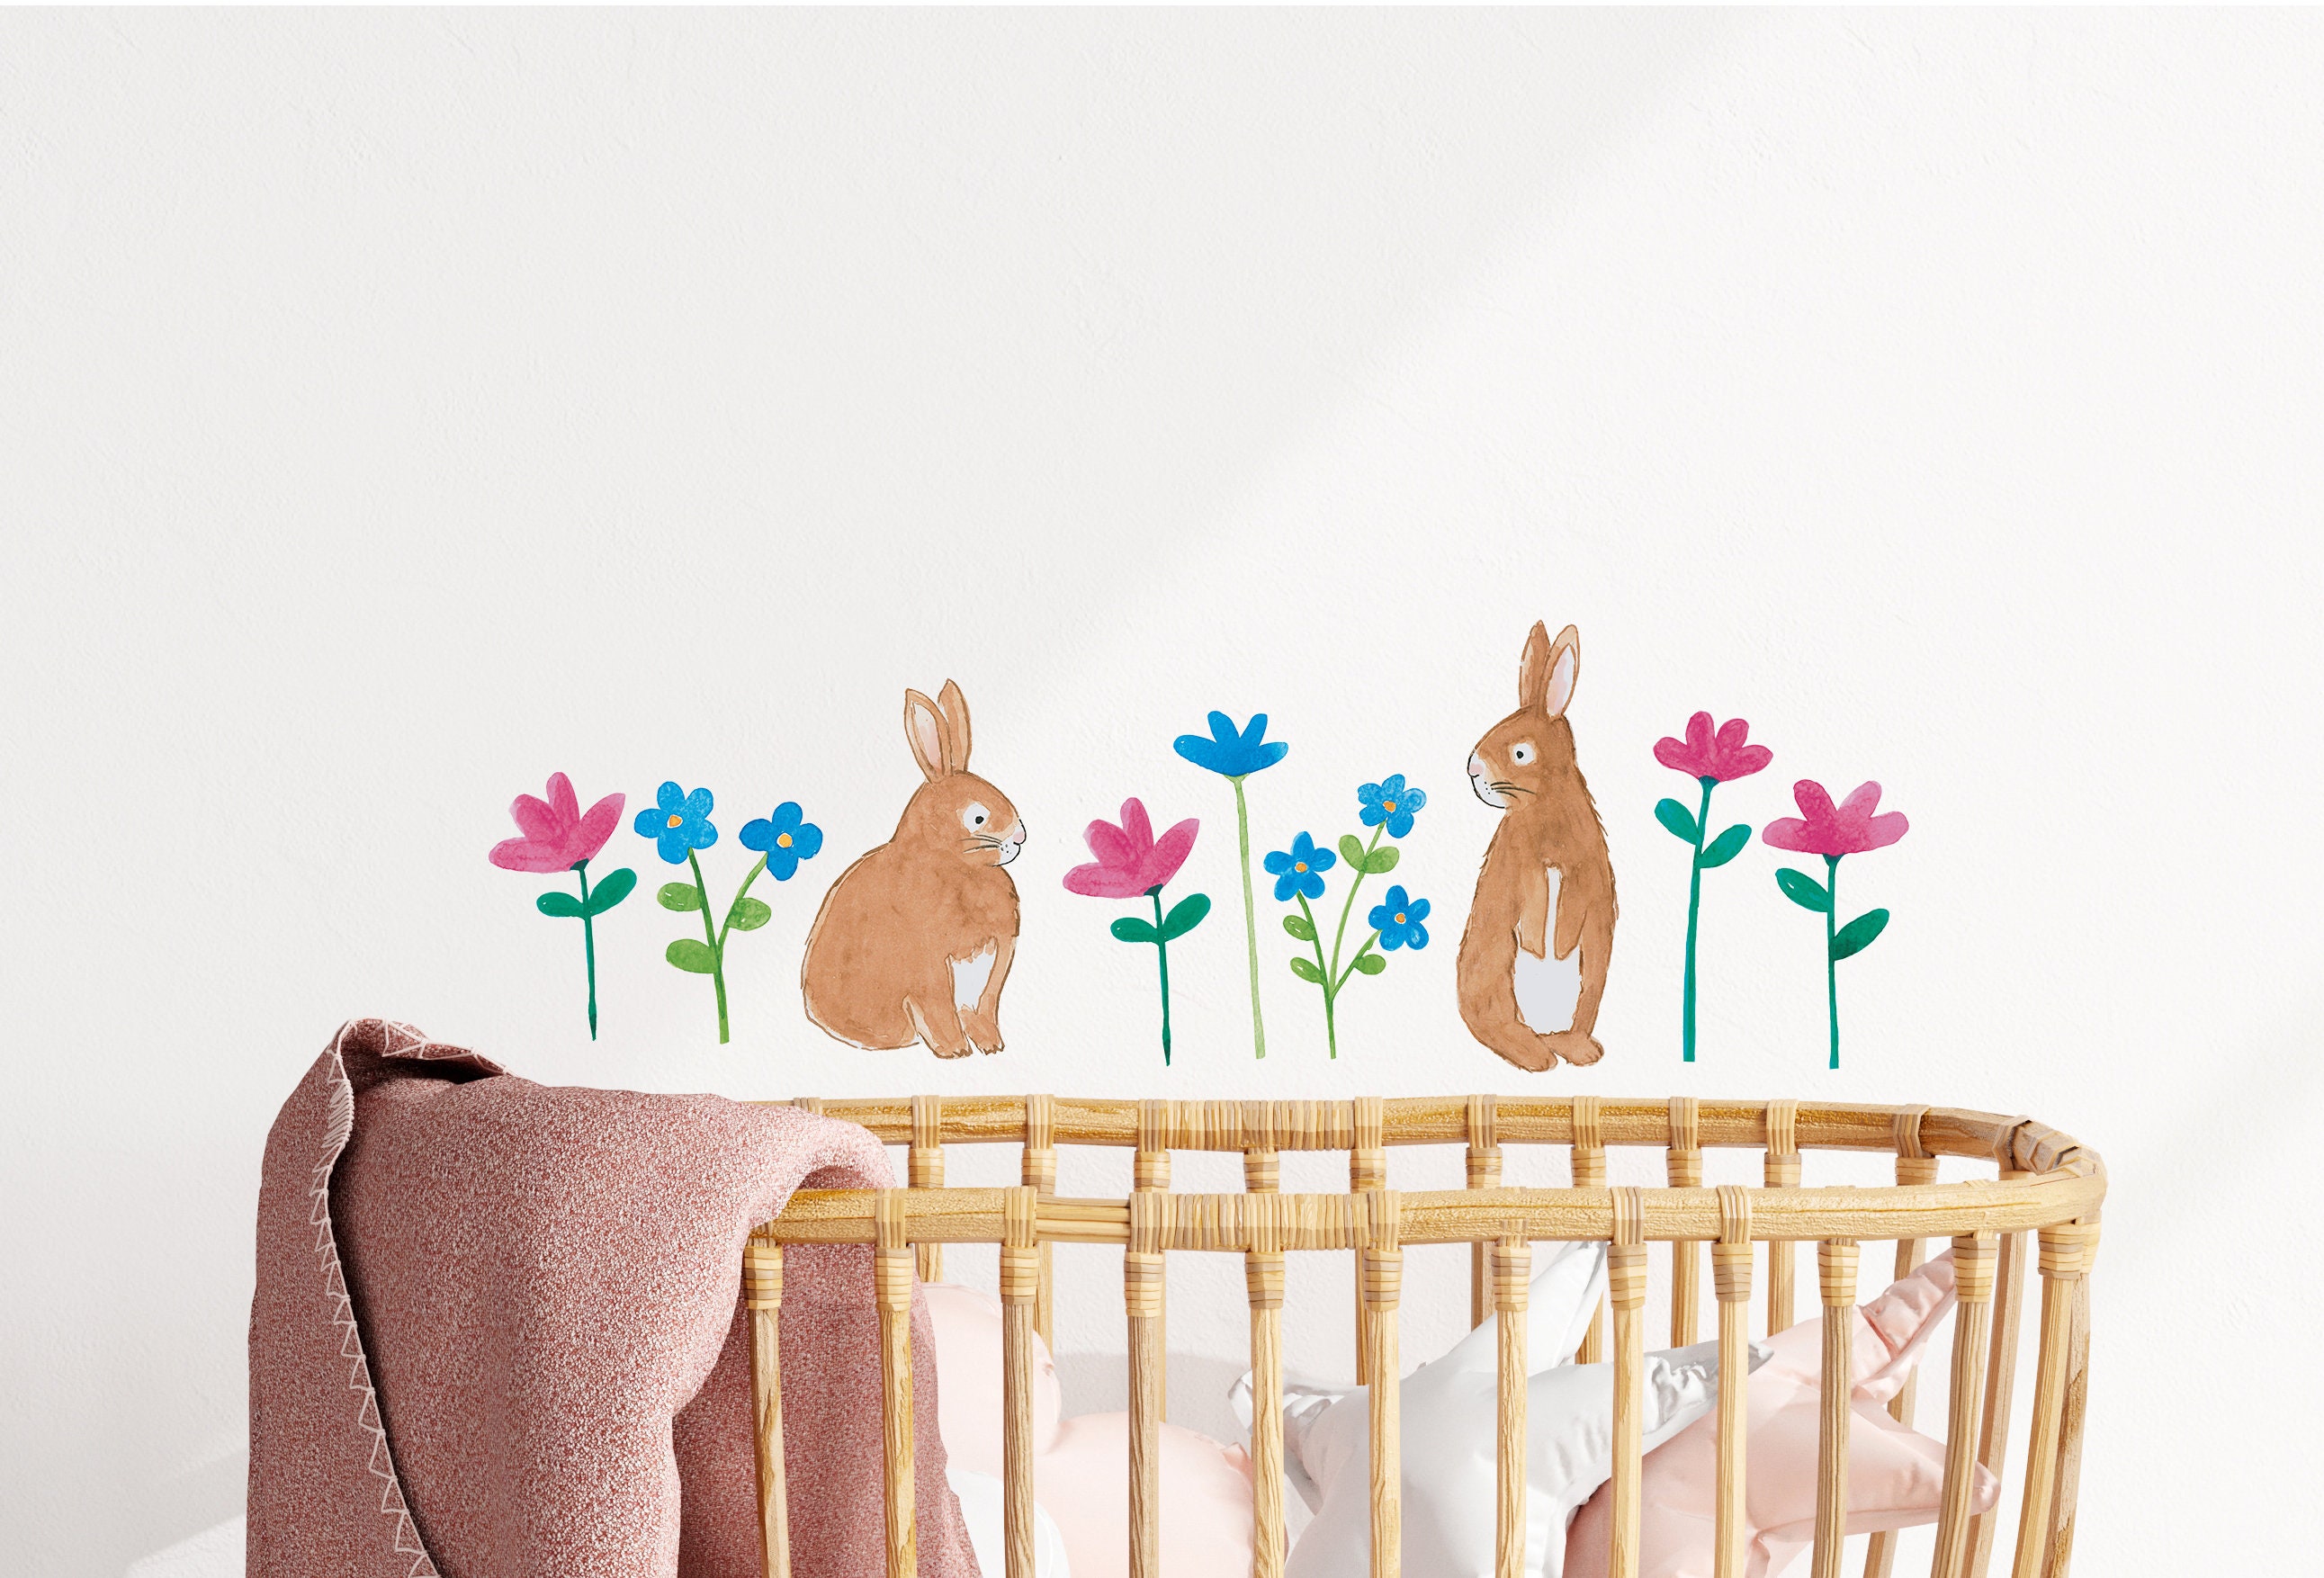 2 pièces Autocollant mural Pâques à imprimé lapin dessin animé